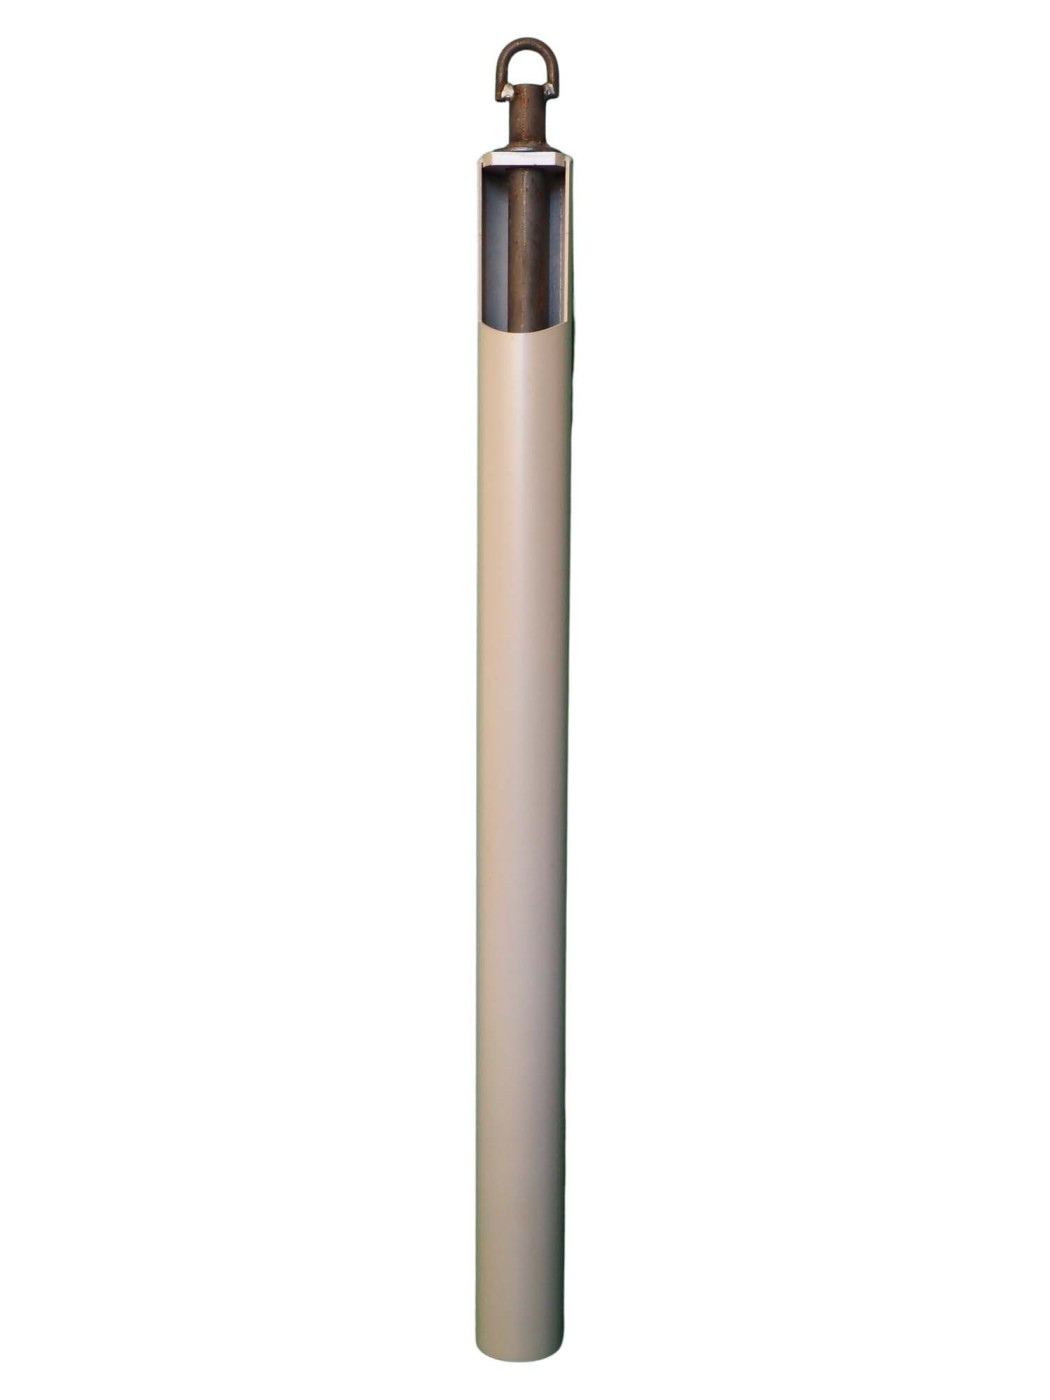 Kiespumpe 76mm für DN 80 Brunnenrohr